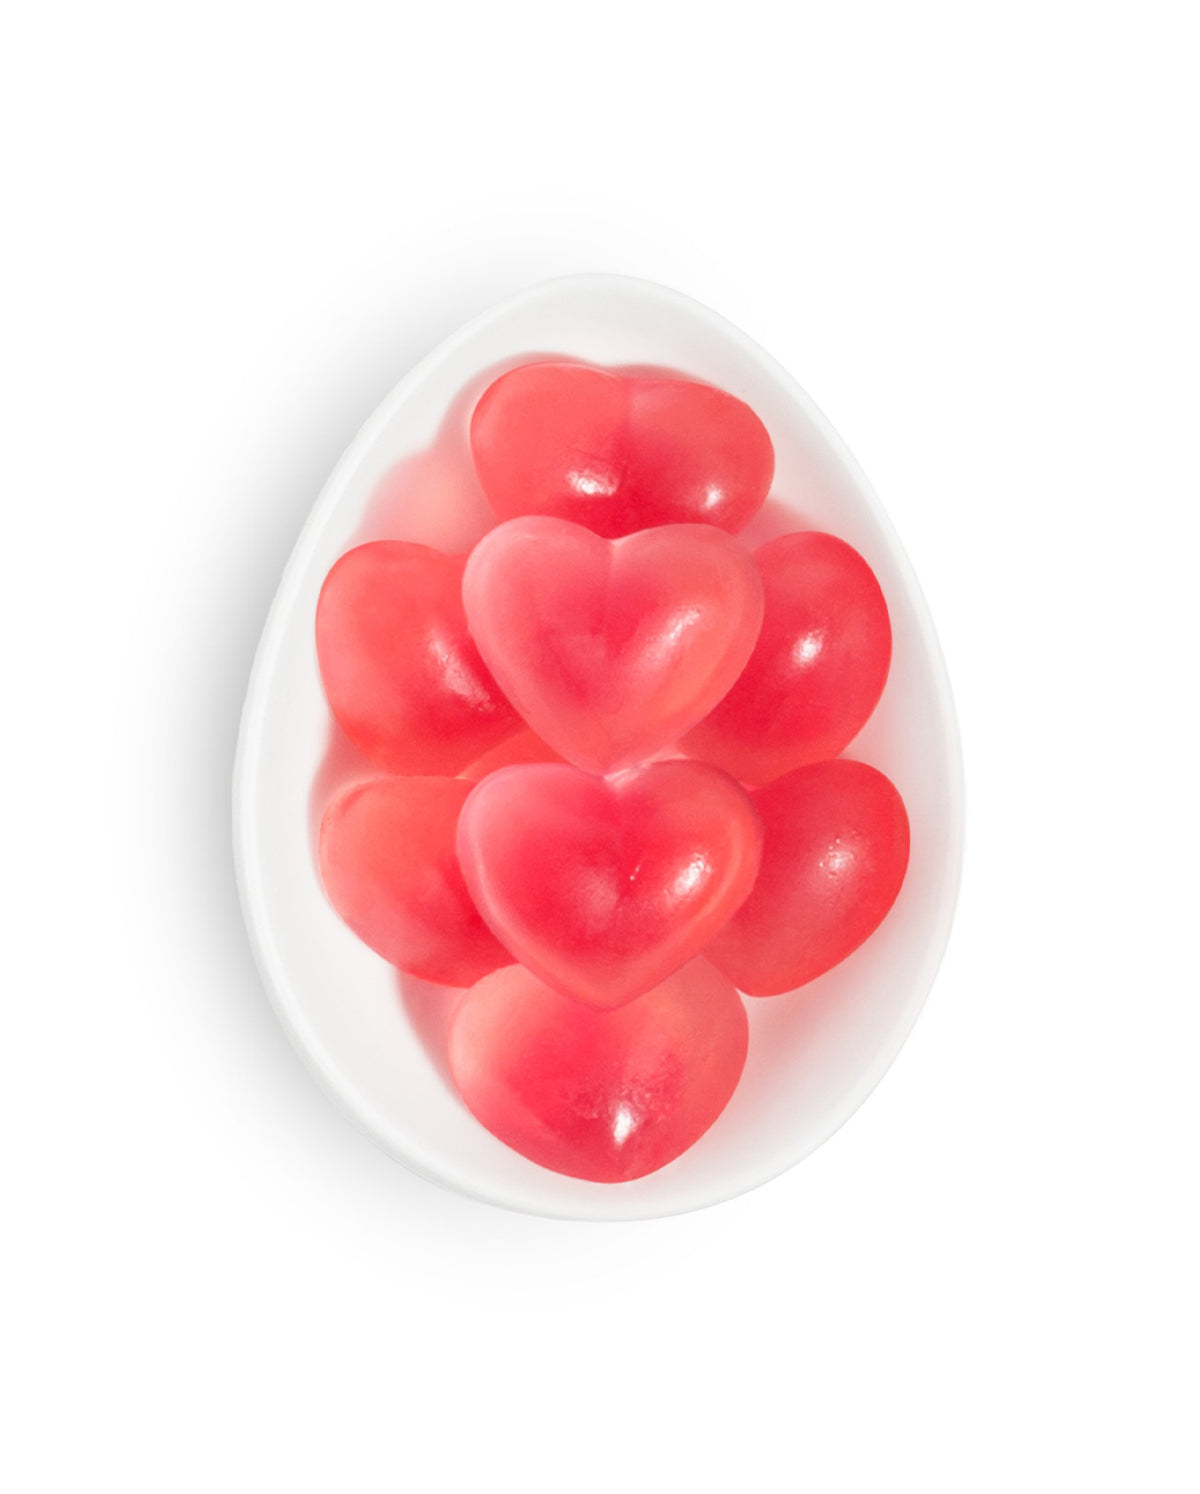 XOXO Strawberry Hearts